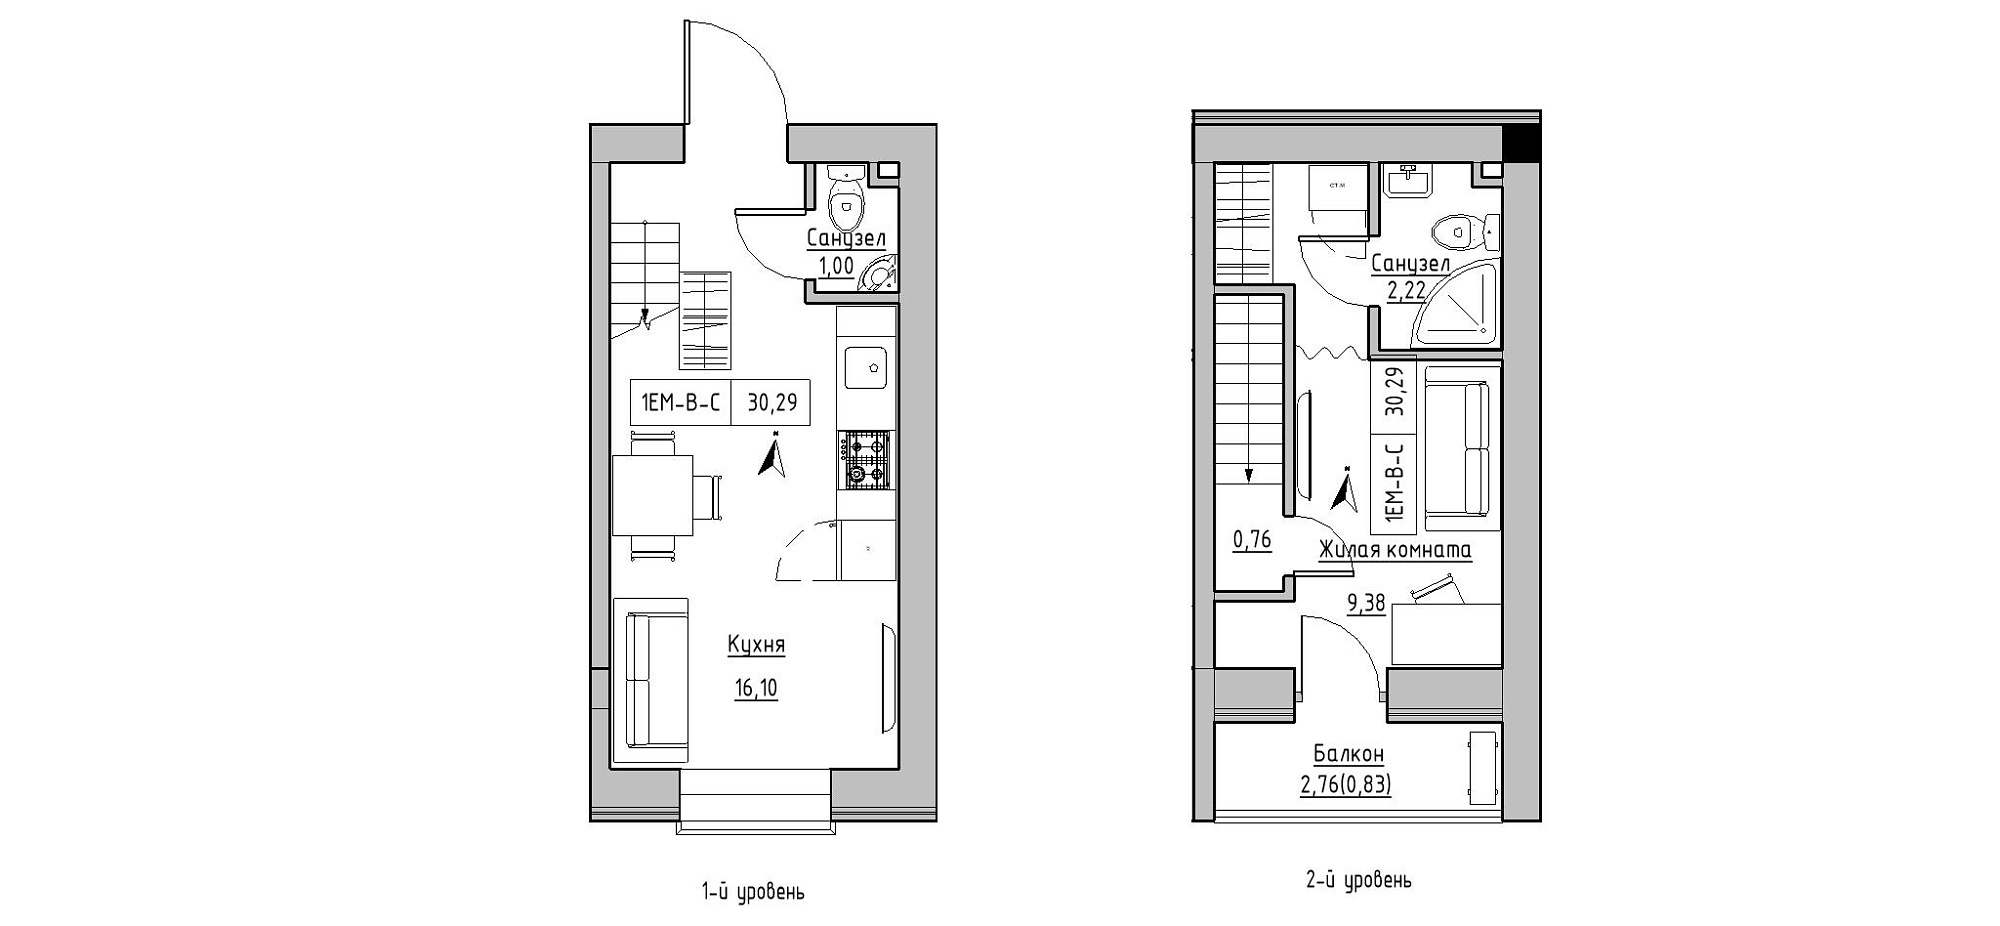 Planning 2-lvl flats area 30.29m2, KS-020-05/0009.